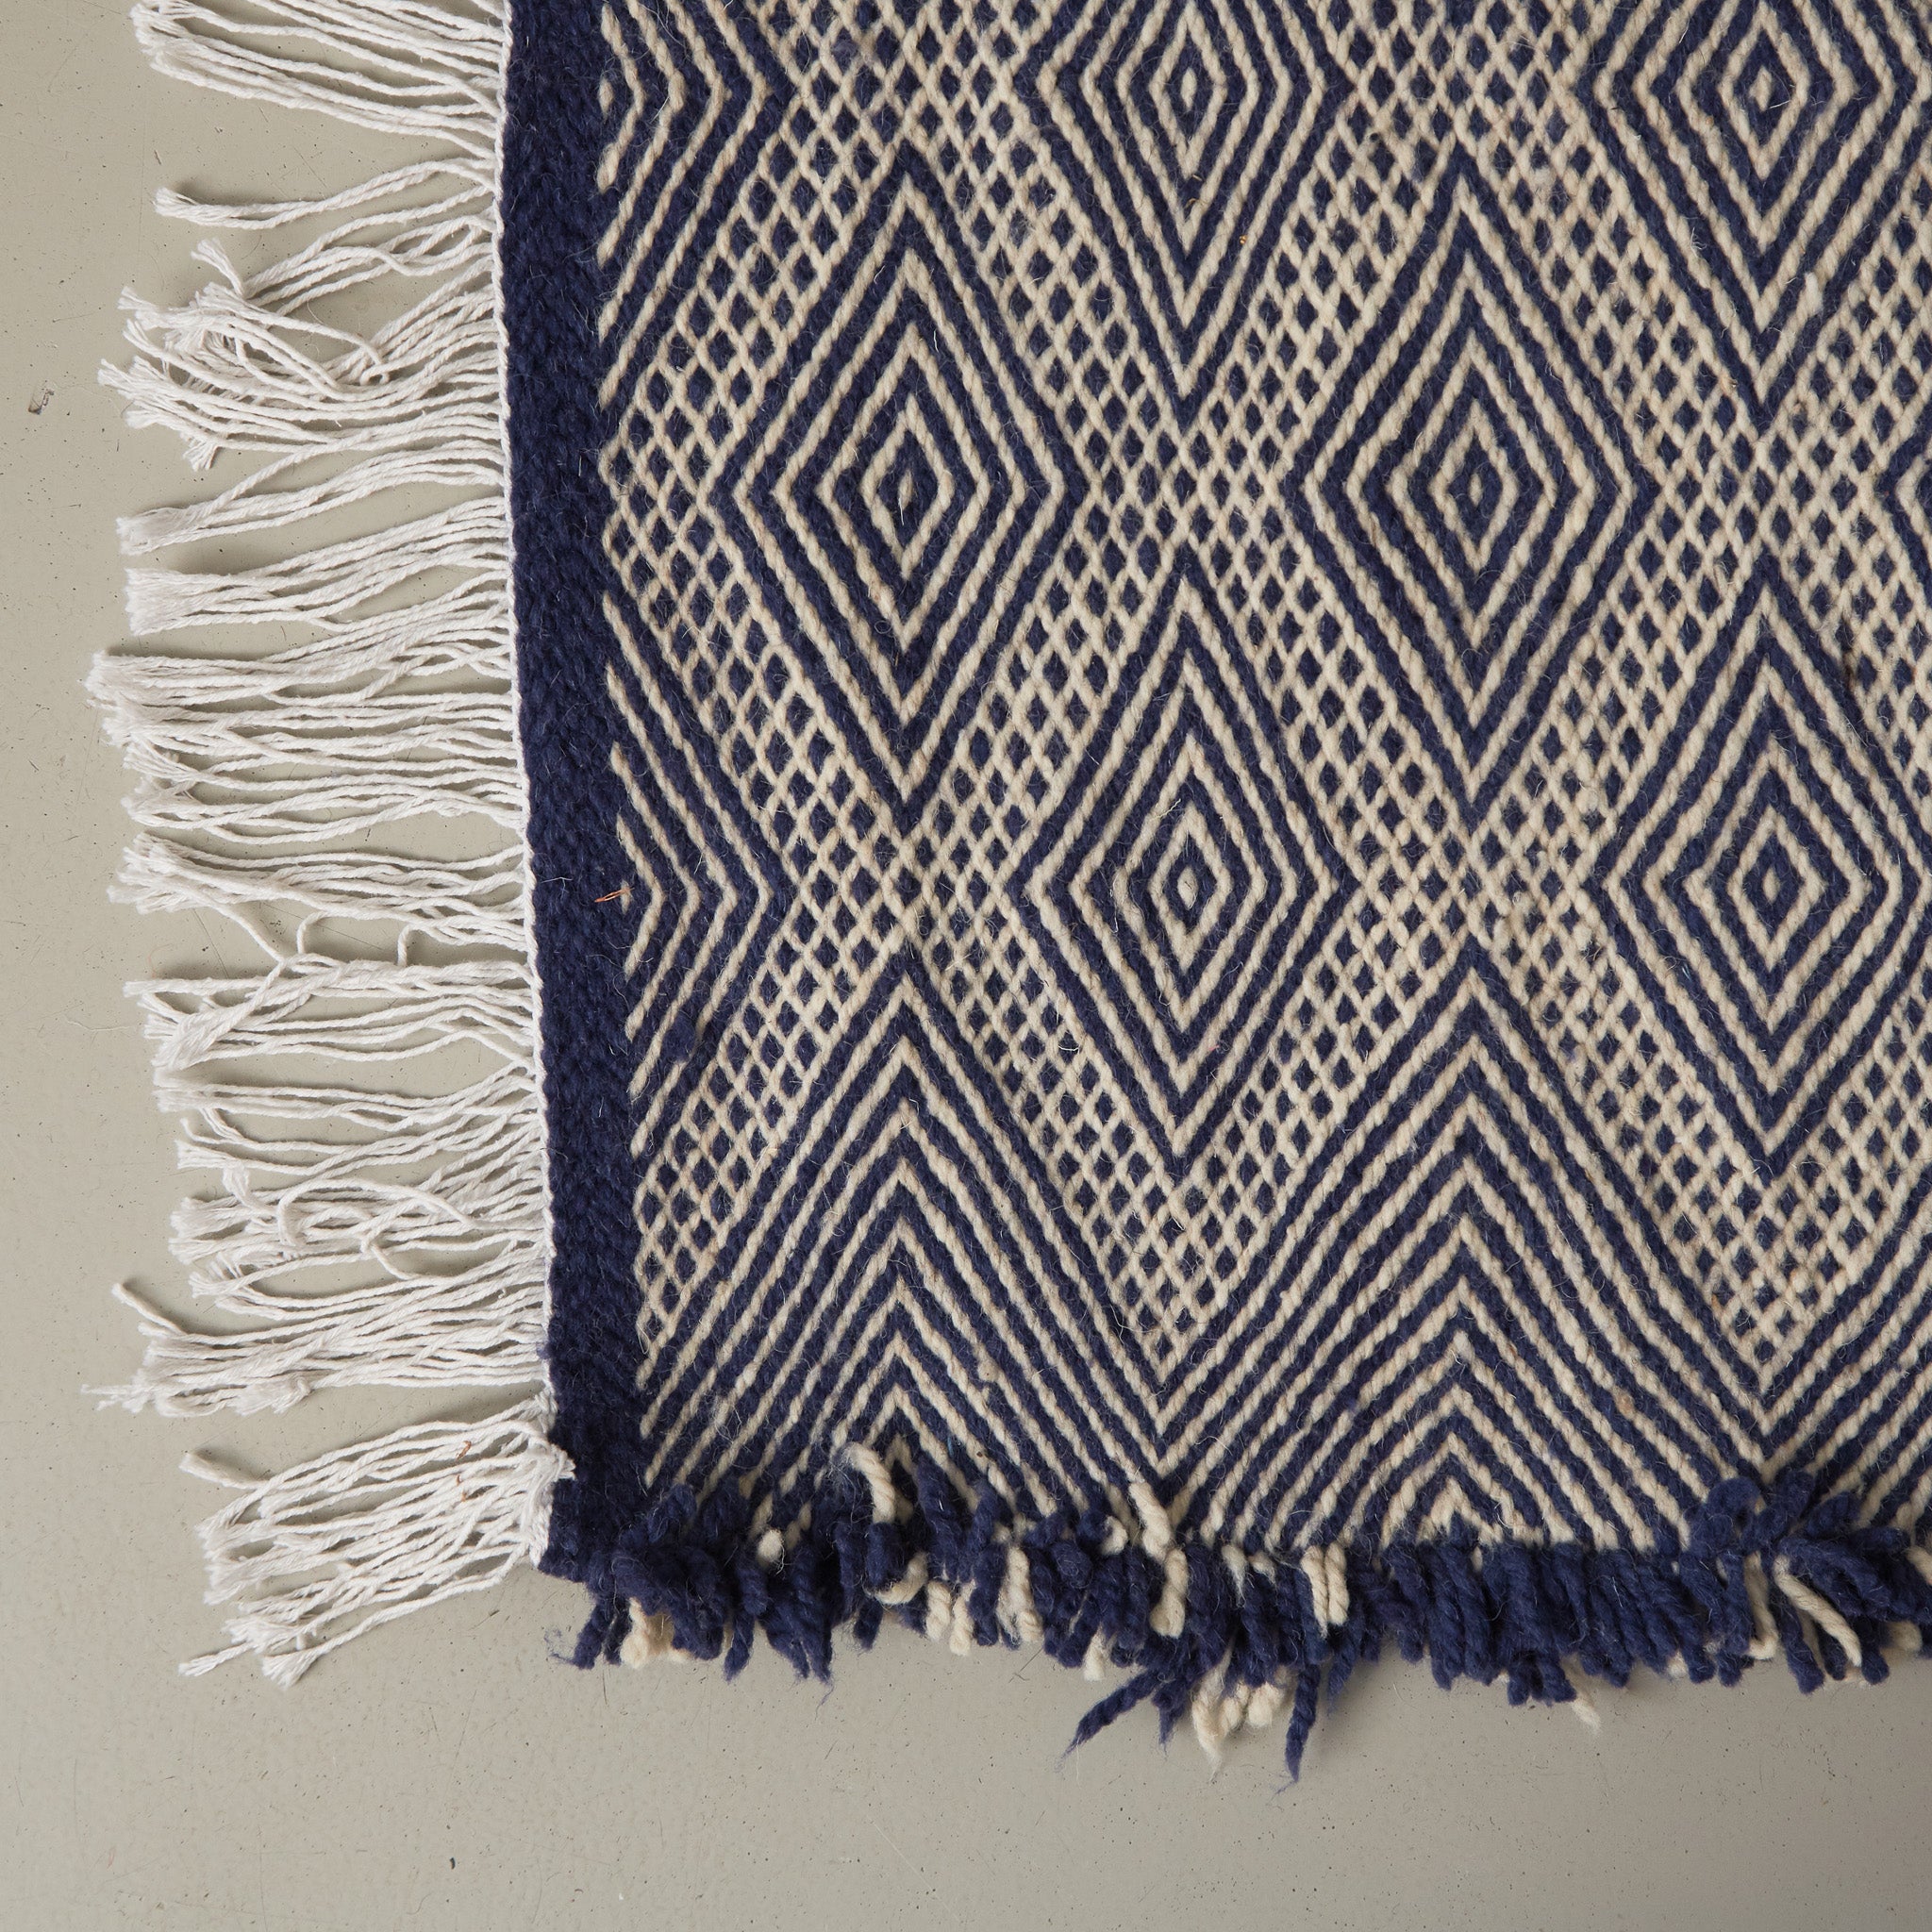 dettaglio dell'angolo e delle fragie di un tappeto zanafi kilim realizzato intrecciando lana color bianco e indigo creando dei rombi